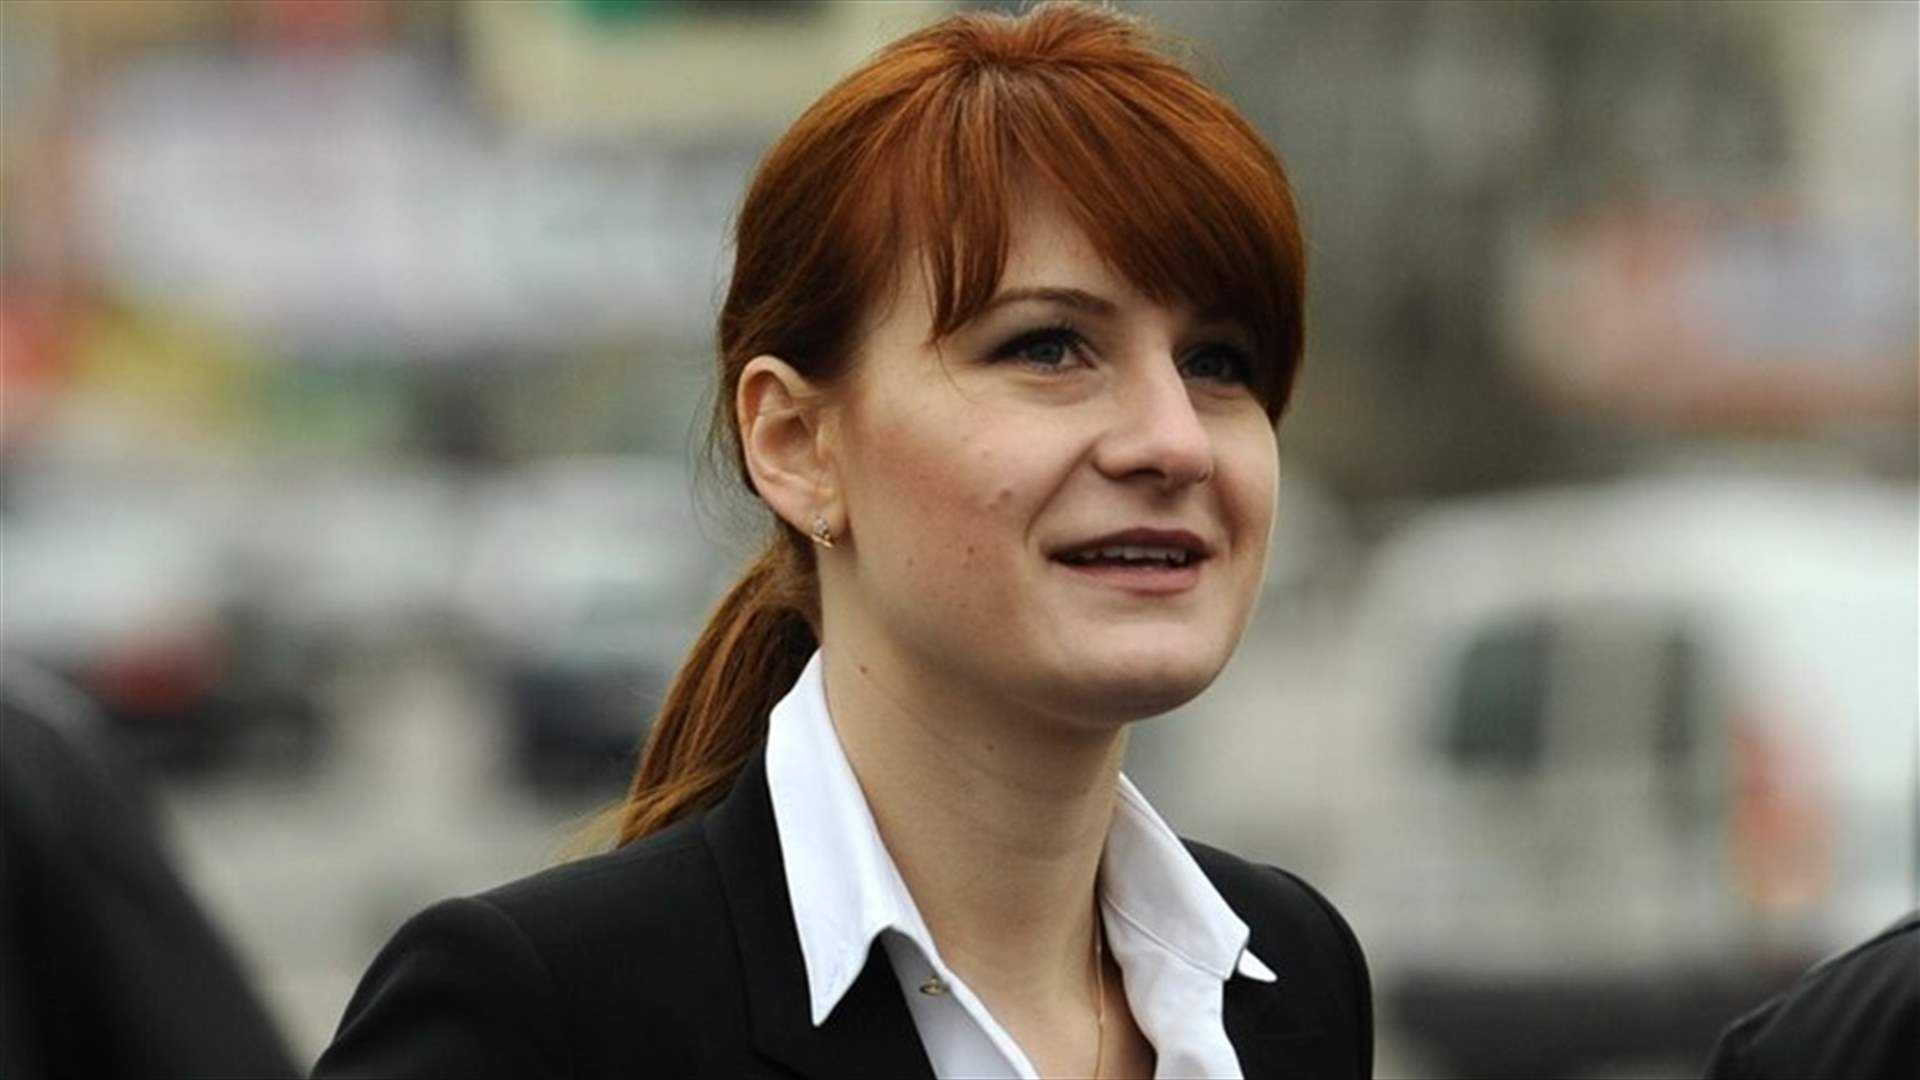 اعتقال امرأة روسية لمحاولتها التأثير على منظمات سياسية اميركية